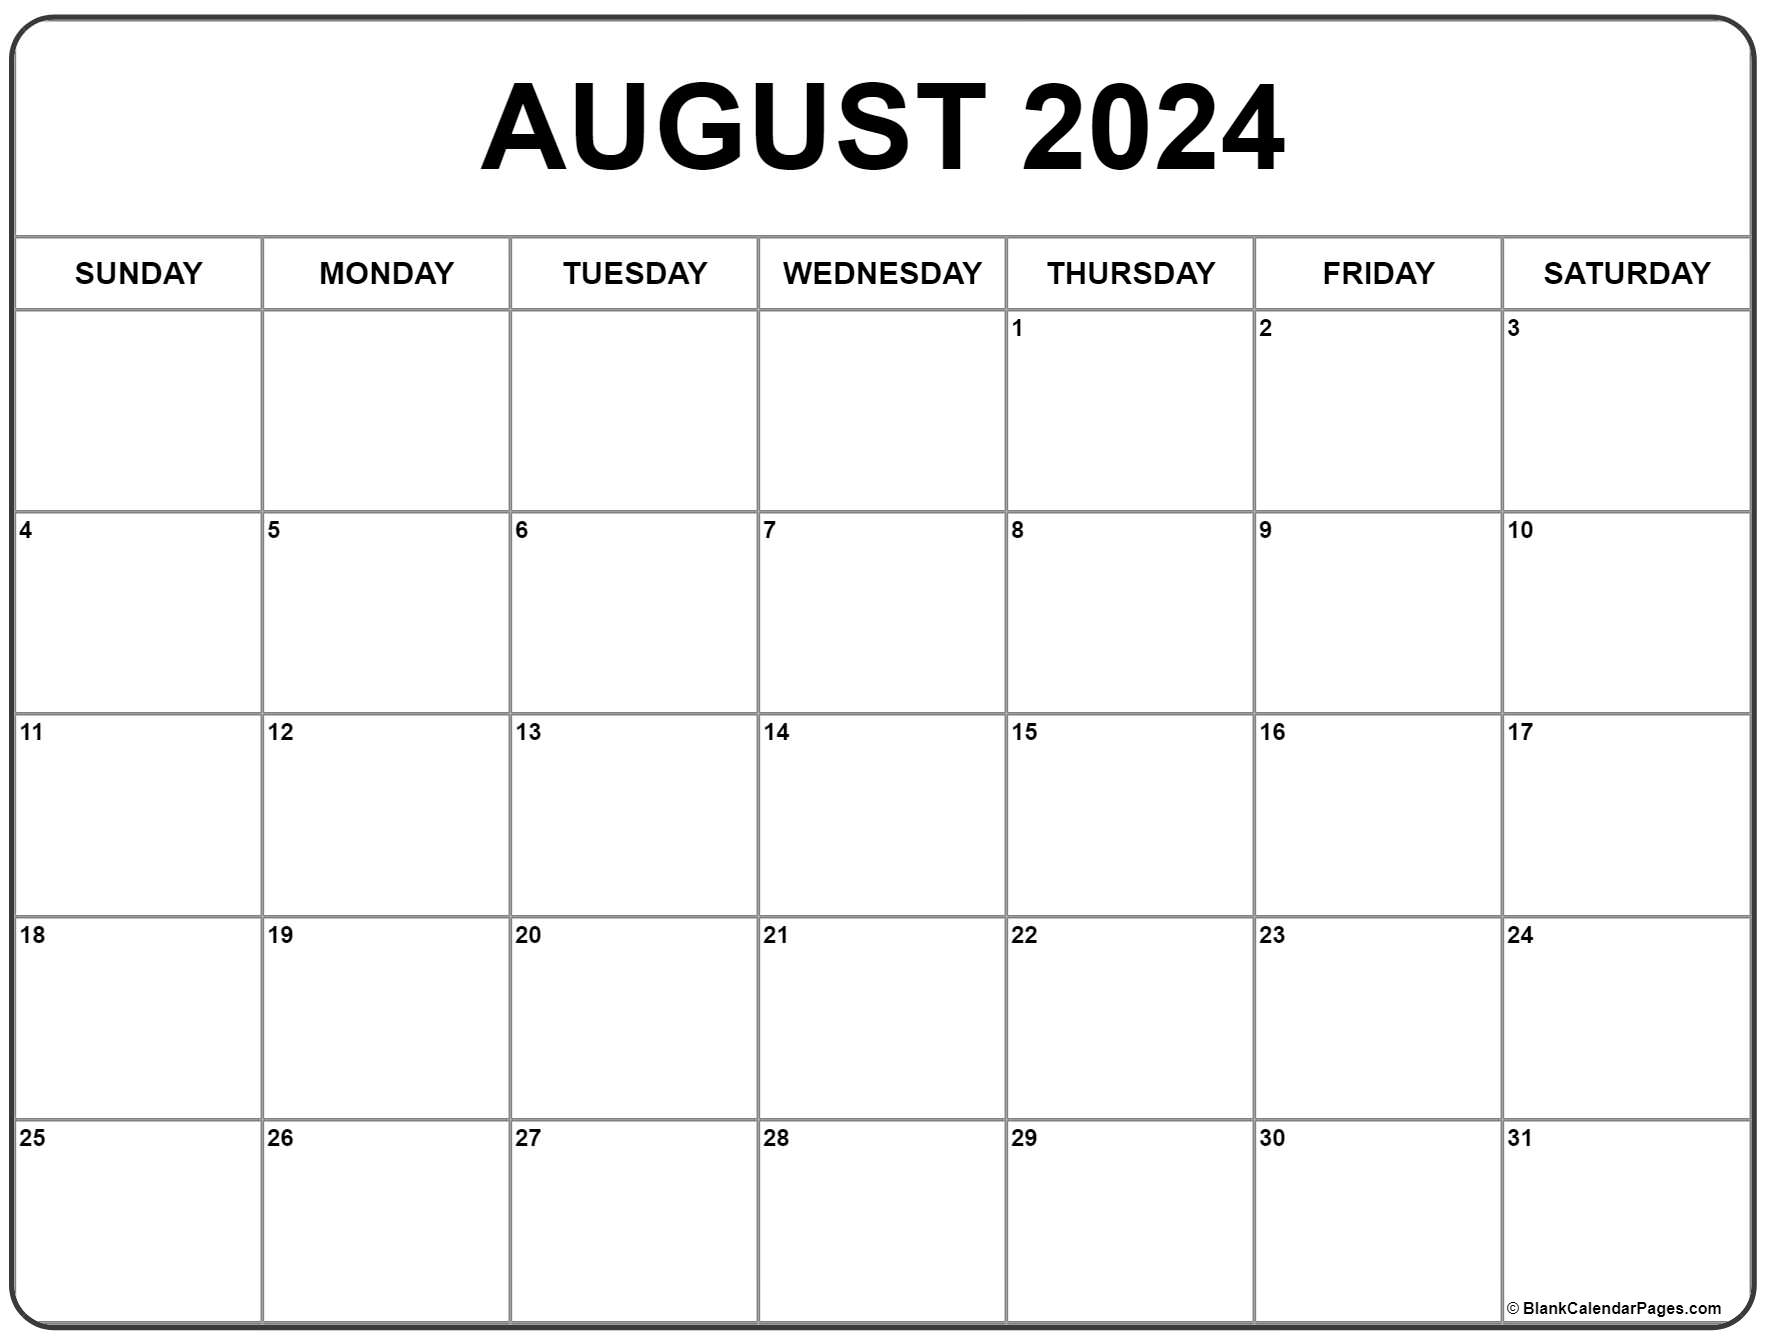 June July August 2022 Calendar Printable August 2022 Calendar | Free Printable Calendar Templates